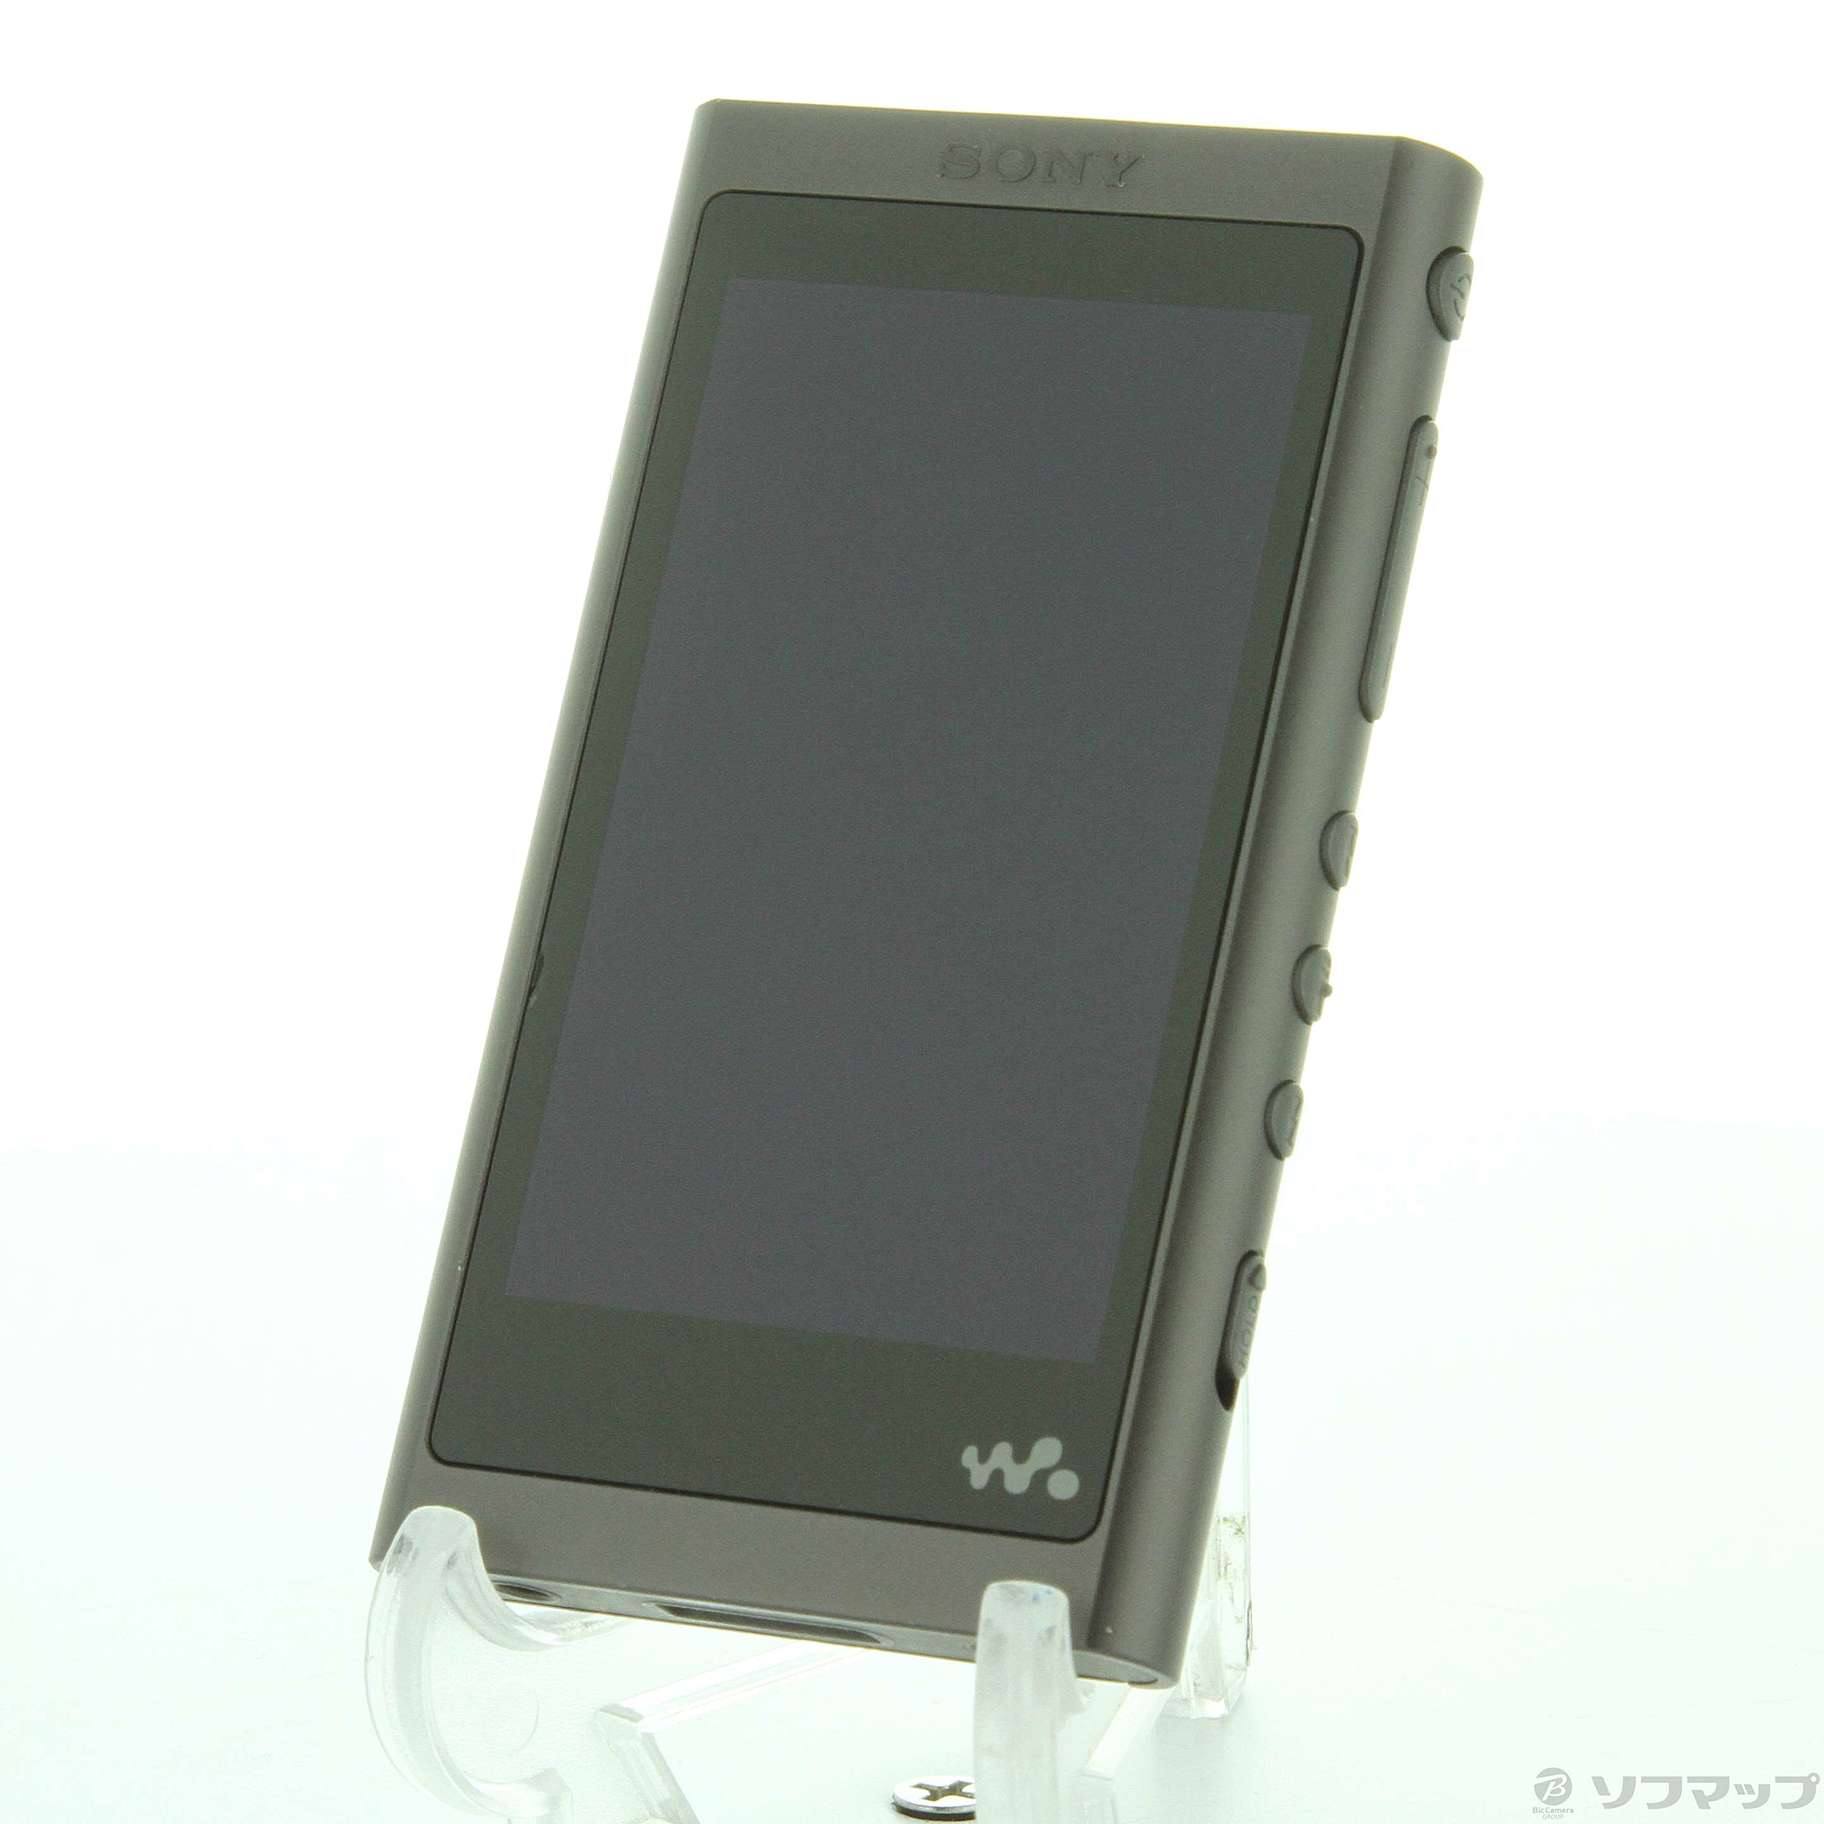 ポータブルプレーヤーソニー ウォークマン Aシリーズ 16GB NW-A55 グレイッシュブラック